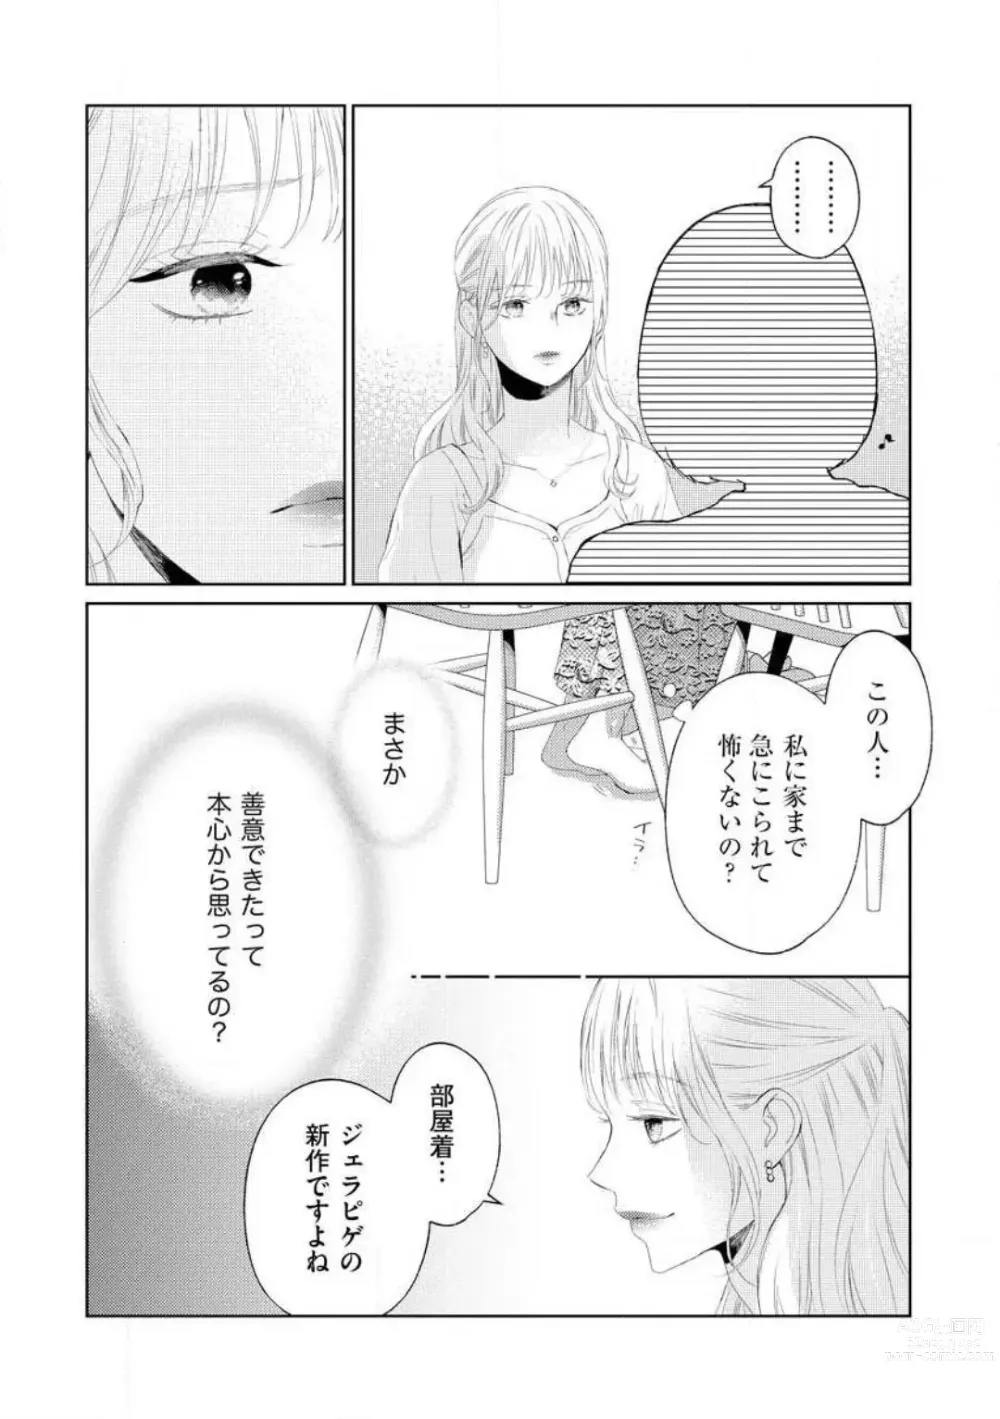 Page 119 of manga 29-sai no Fu Junai 1-5